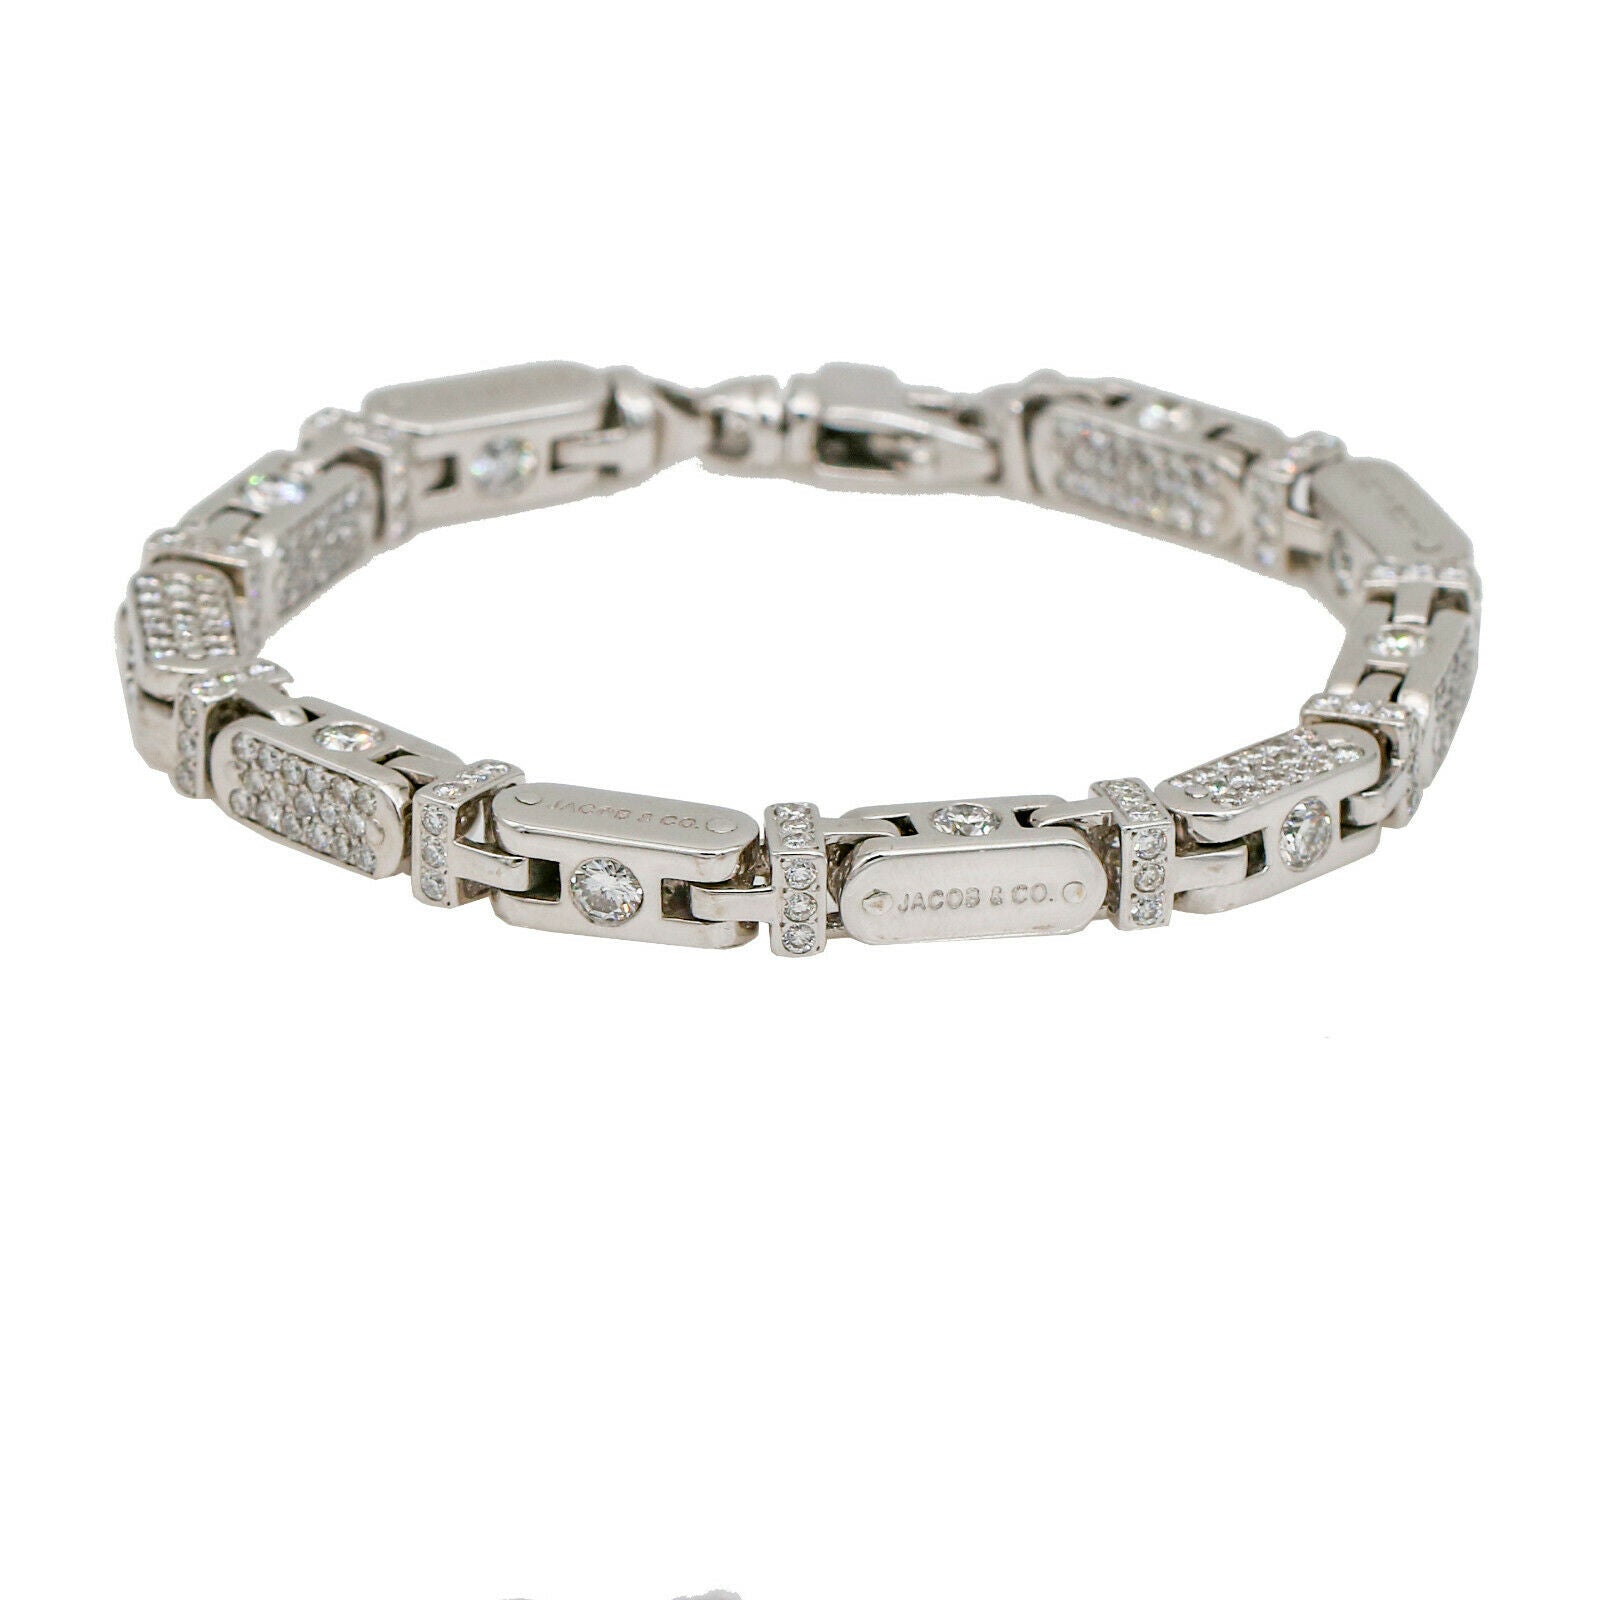 Jacob & Co. Men's Pave Diamond Capsule Link Bracelet in 18k White Gold 12.50 ctw